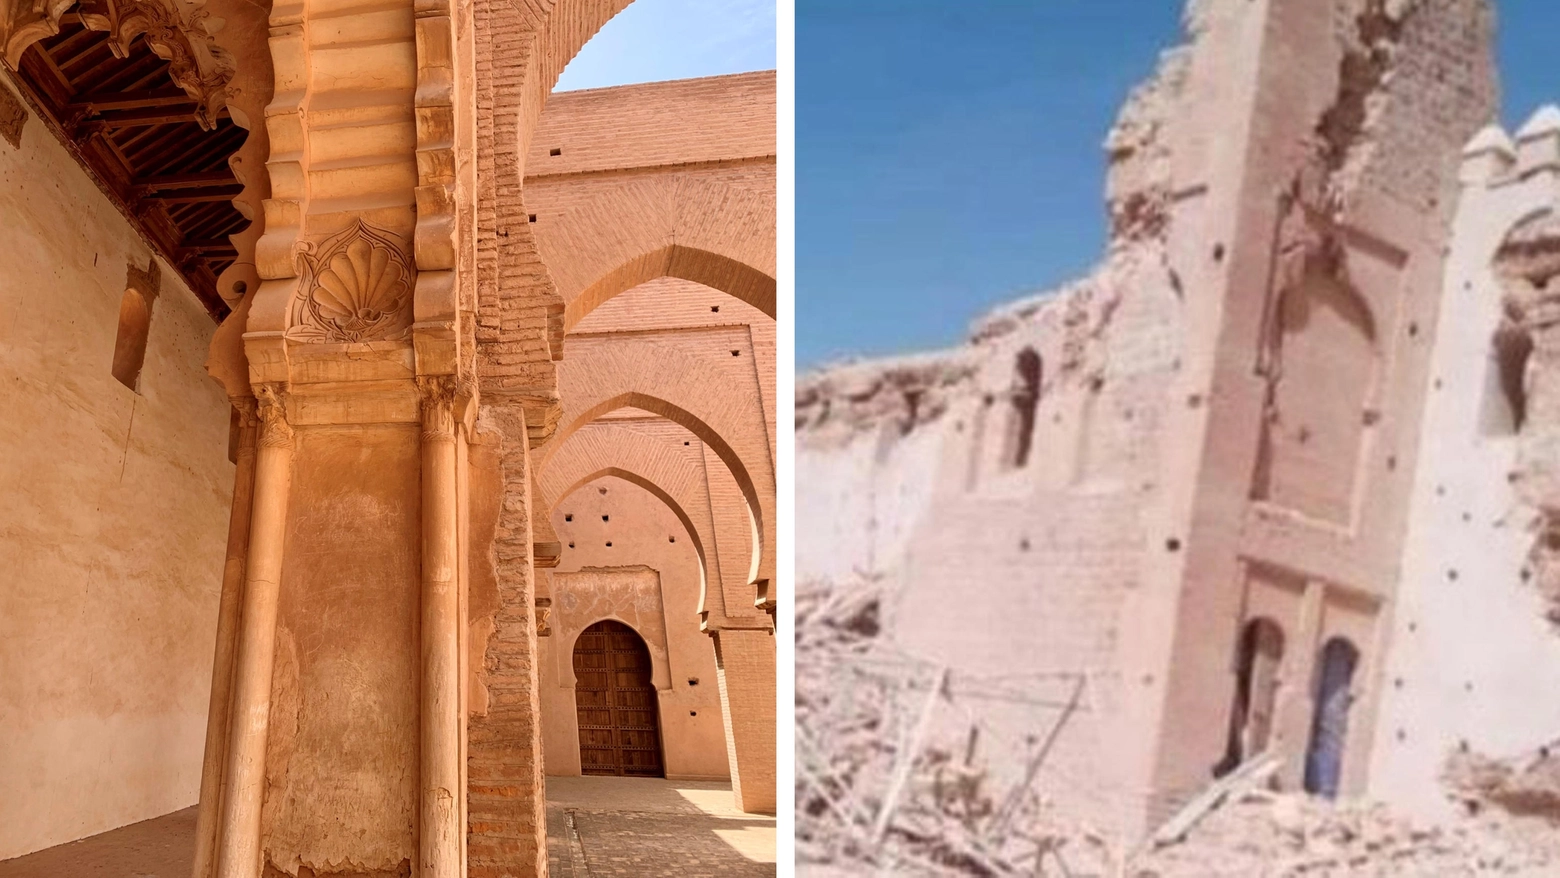 La moschea di Tinmel sull'Atlante prima e dopo il terremoto (Ansa)